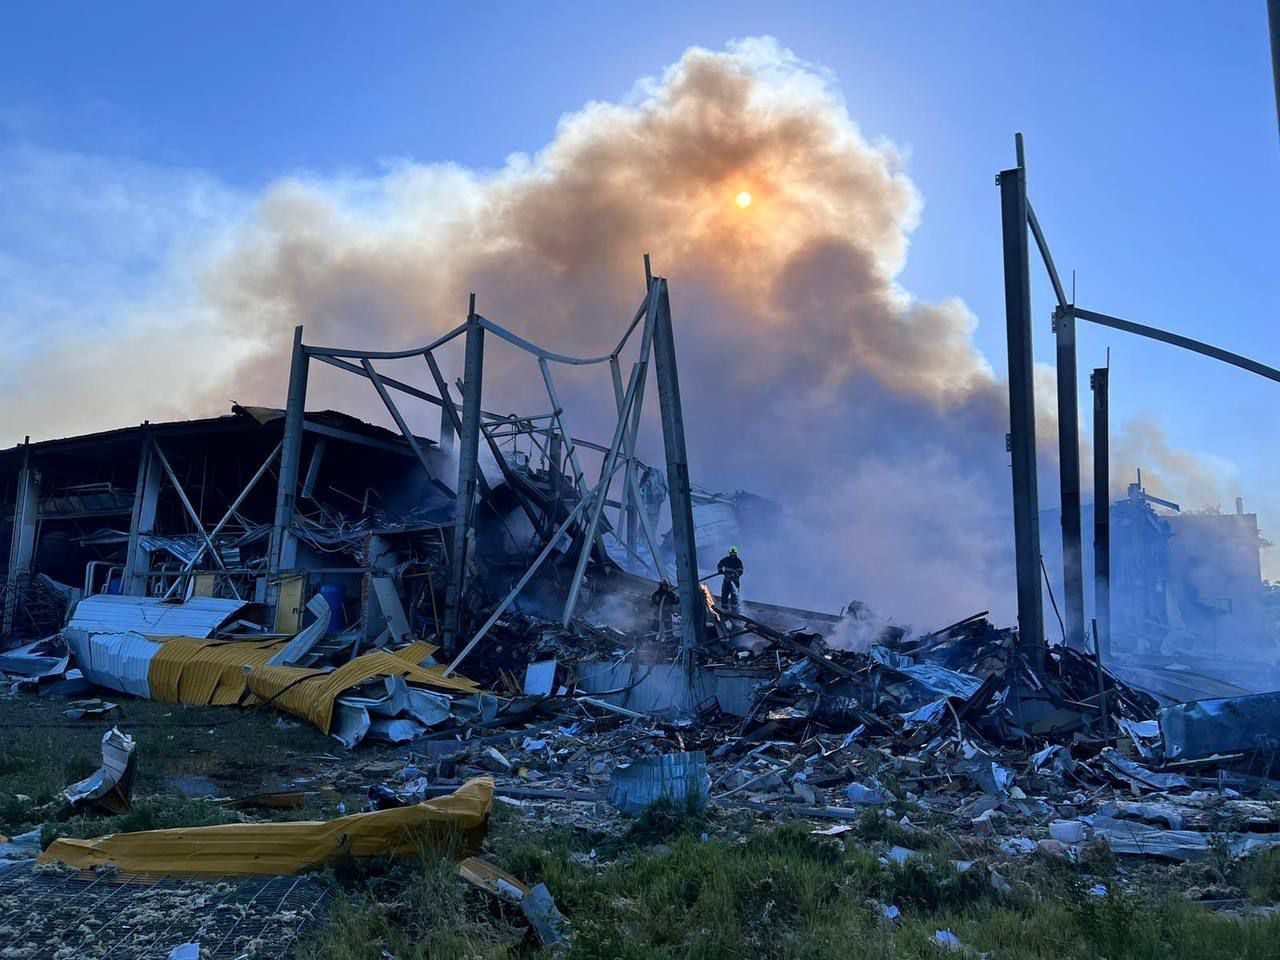 Удар по Кременчугу: в горящем ТЦ обрушилась крыша, внутри осталось много людей - очевидцы